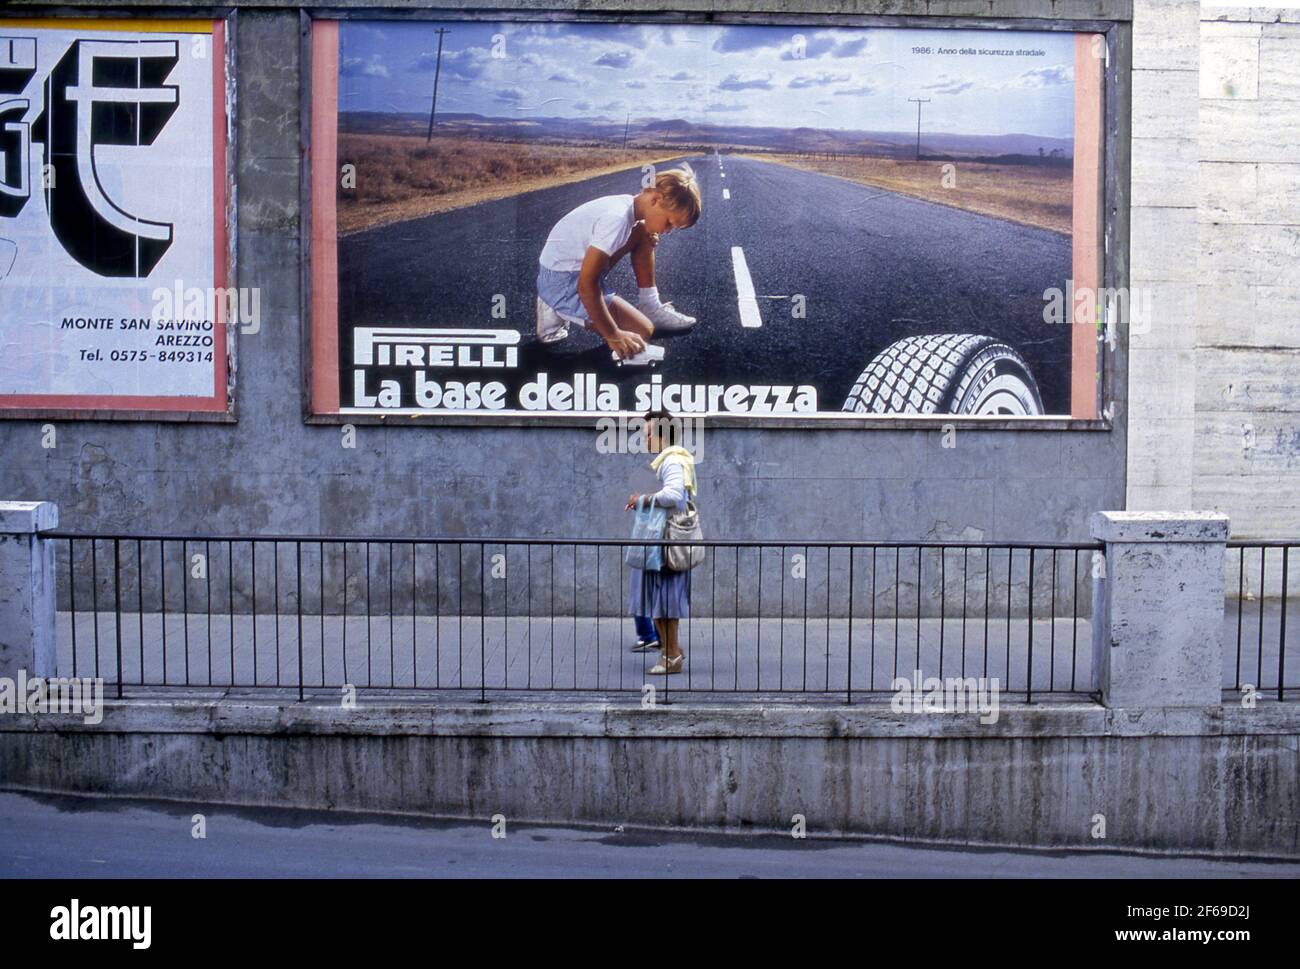 Affiche publicitaire extérieure pour pneus Pirelli dans la rue d'Arezzo, Italie vers les années 1980. Banque D'Images